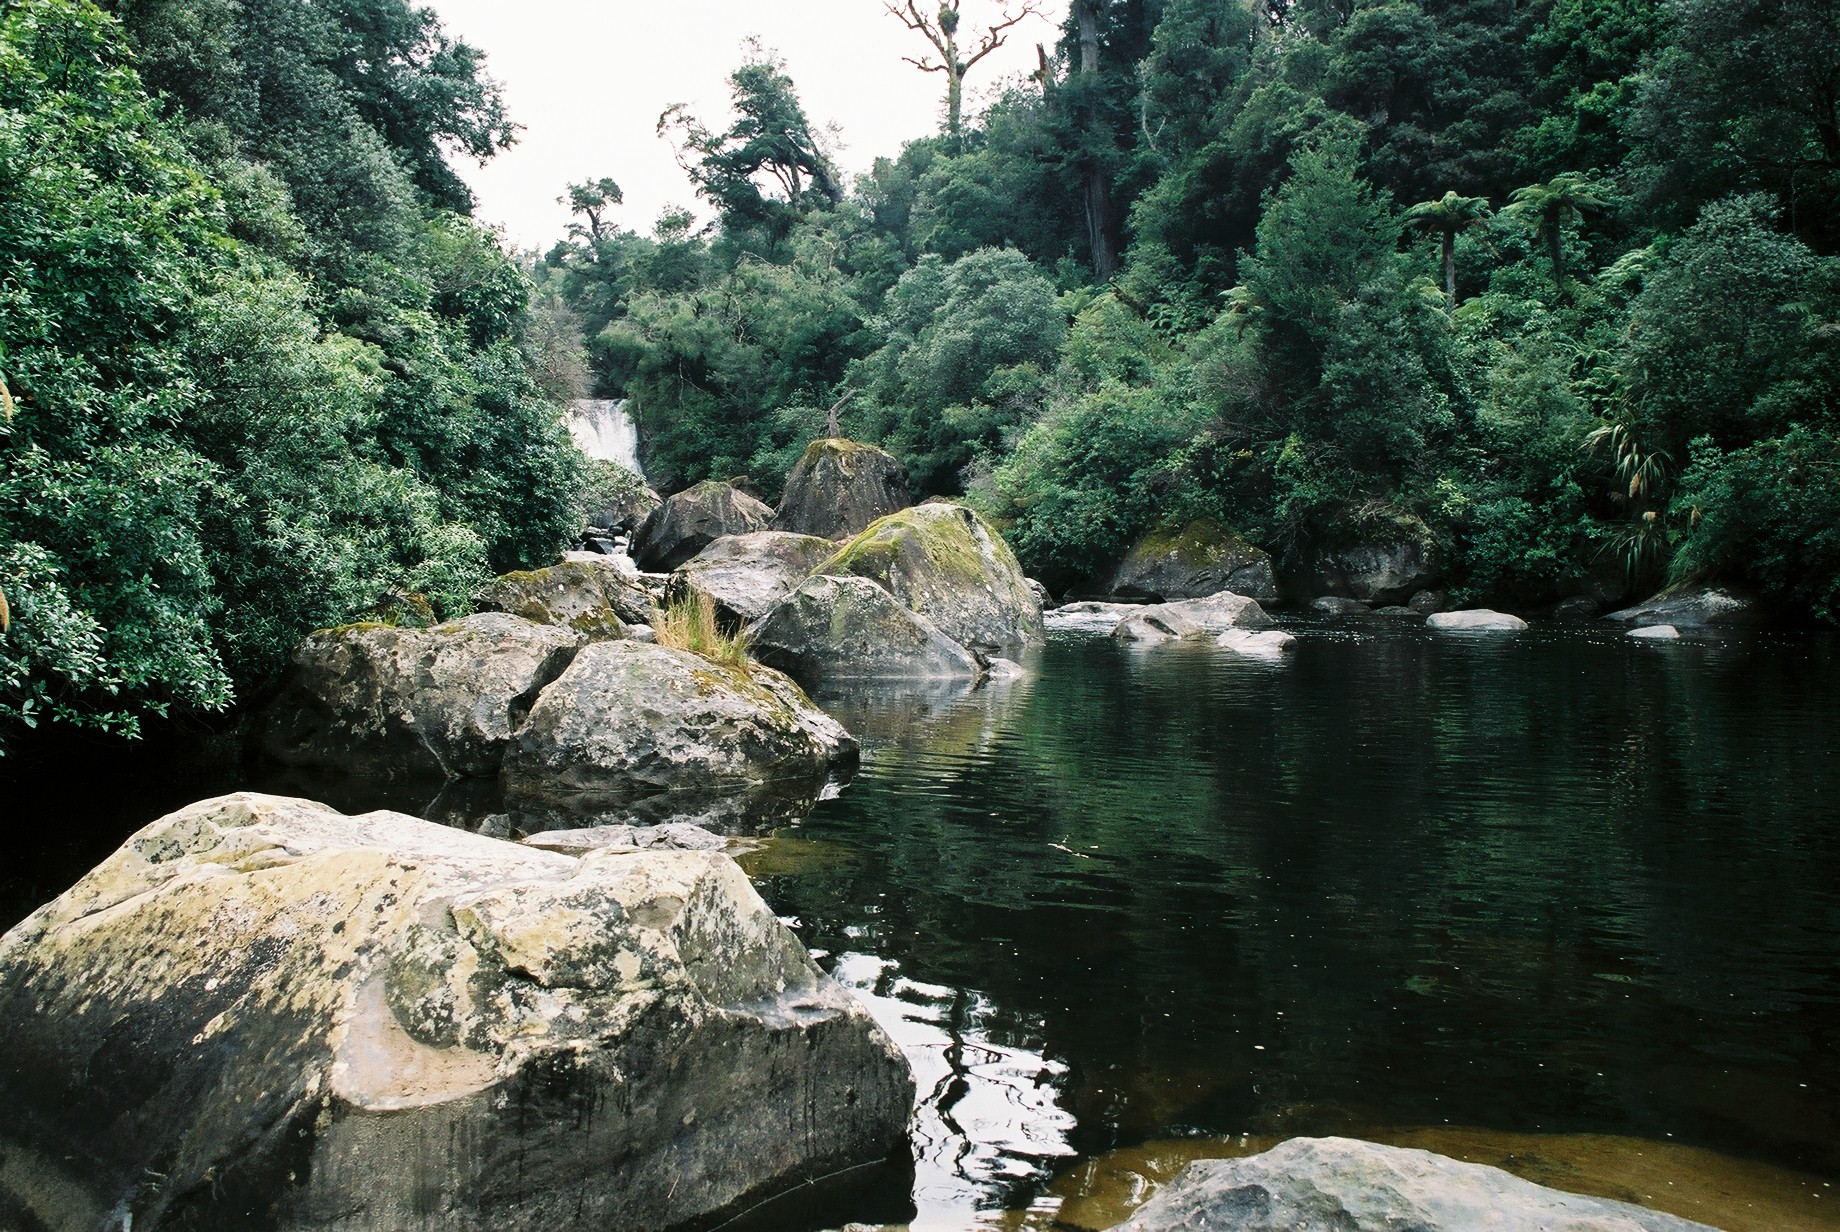 fotka / image Urewera National Park, color negatives, New Zealand